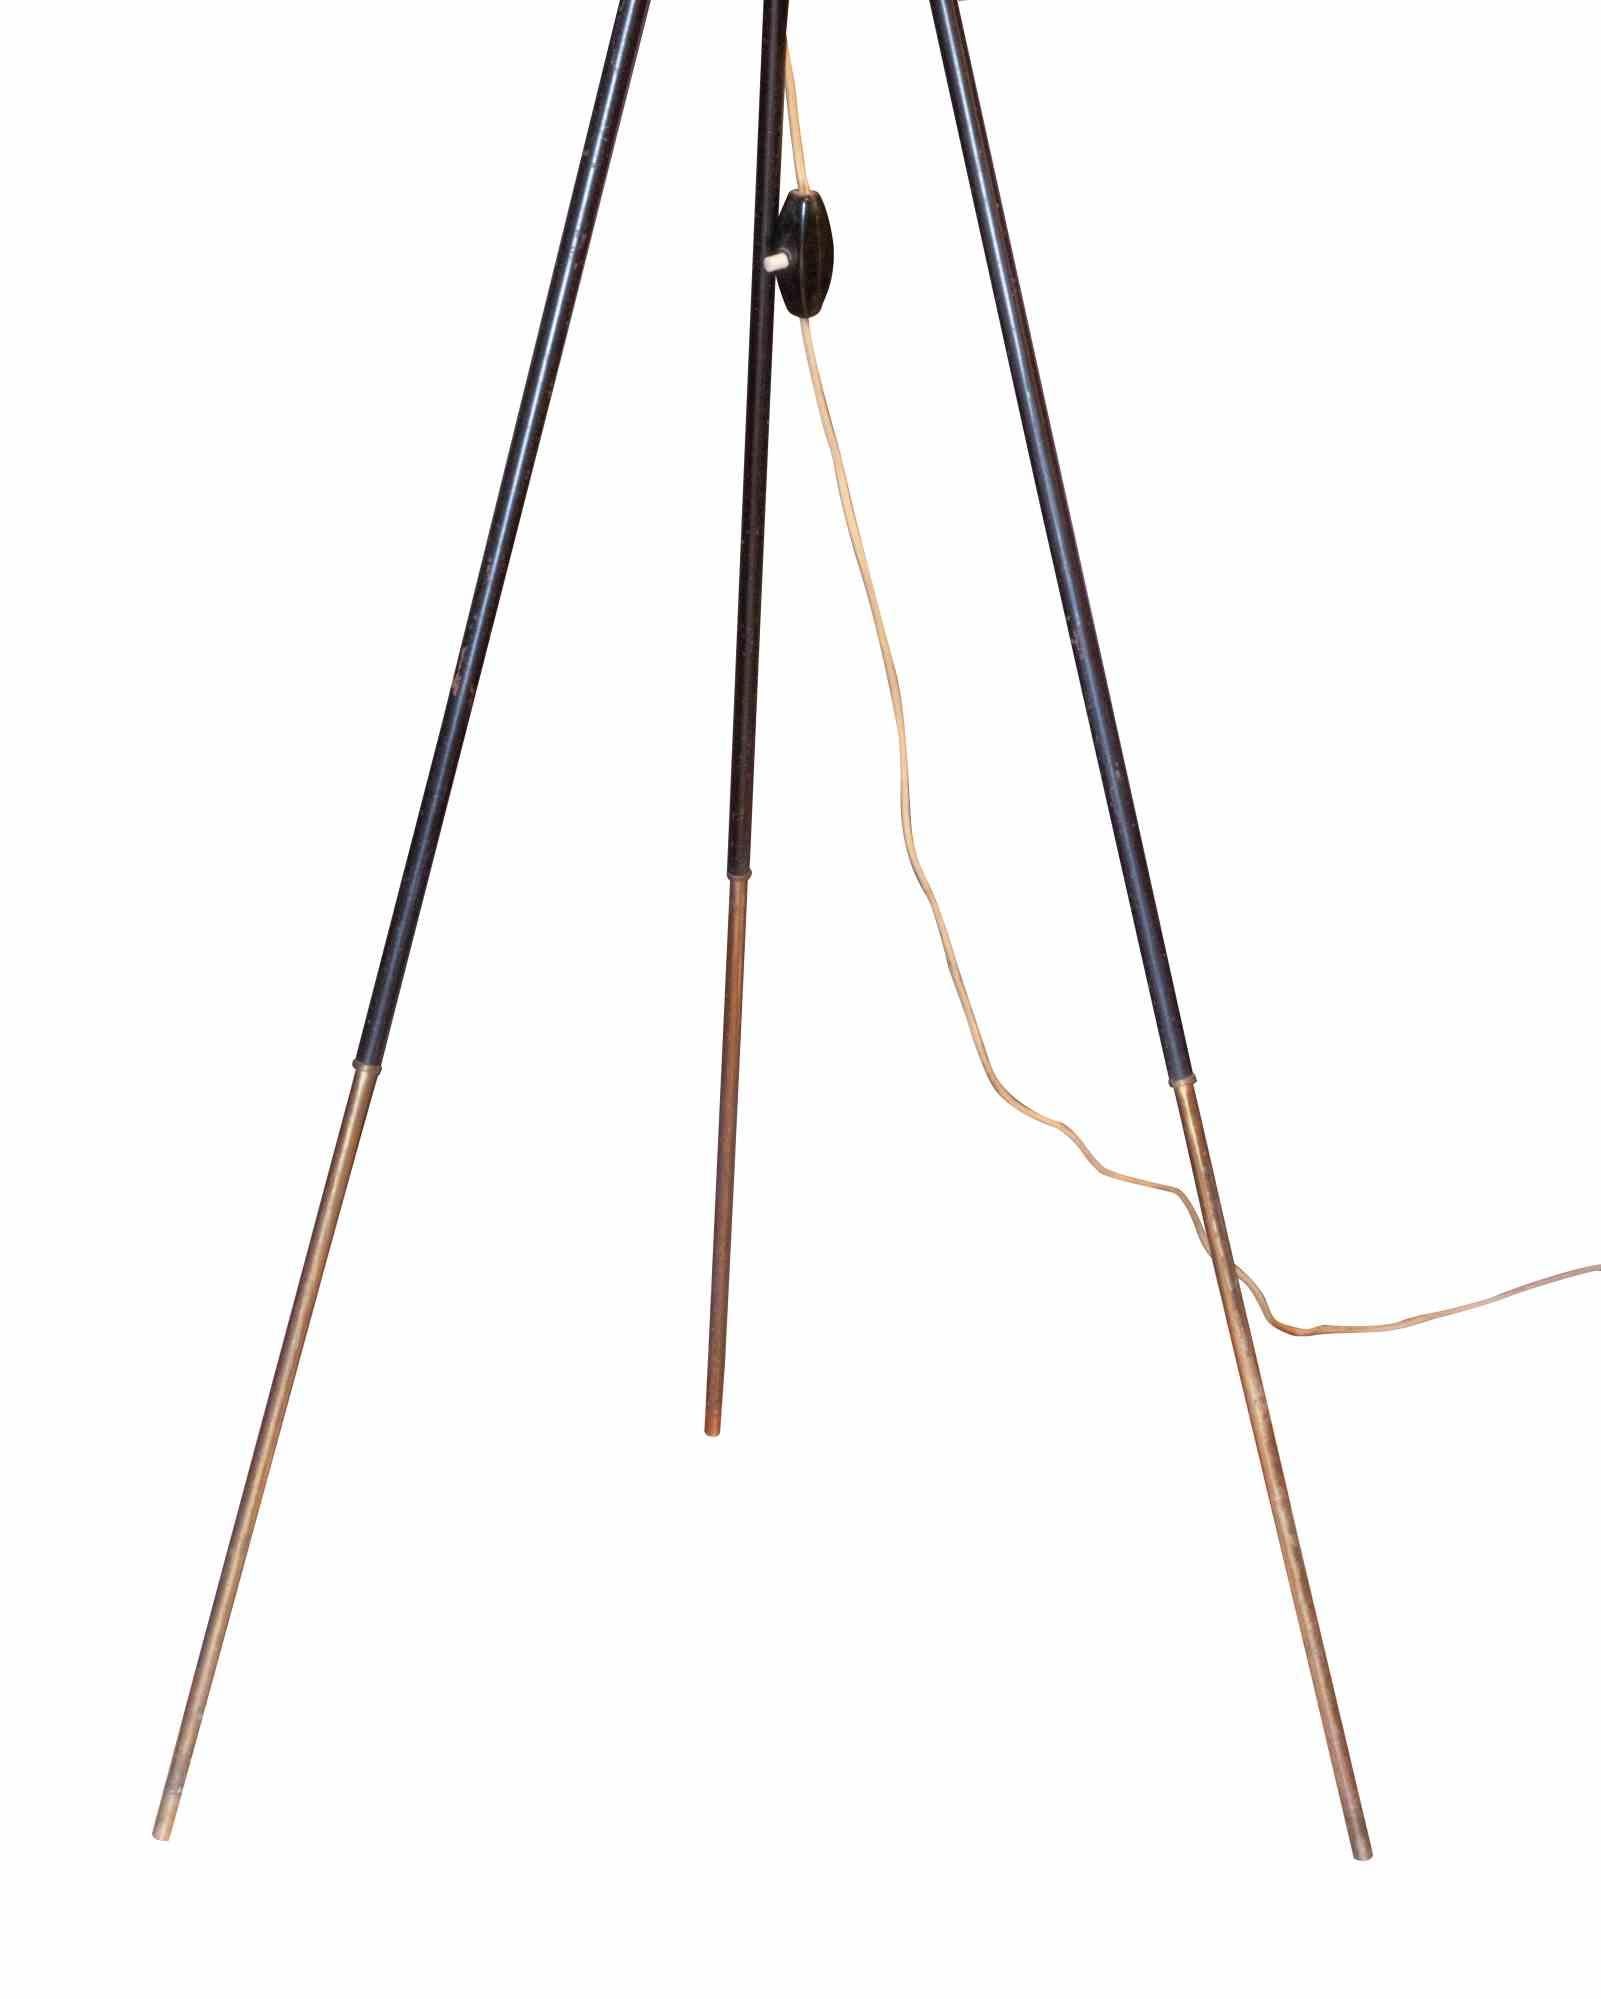 Le lampadaire tripode est une lampe design réalisée en Italie dans les années 1950.

Verre opalin blanc, structure en métal verni noir, détails en laiton.

